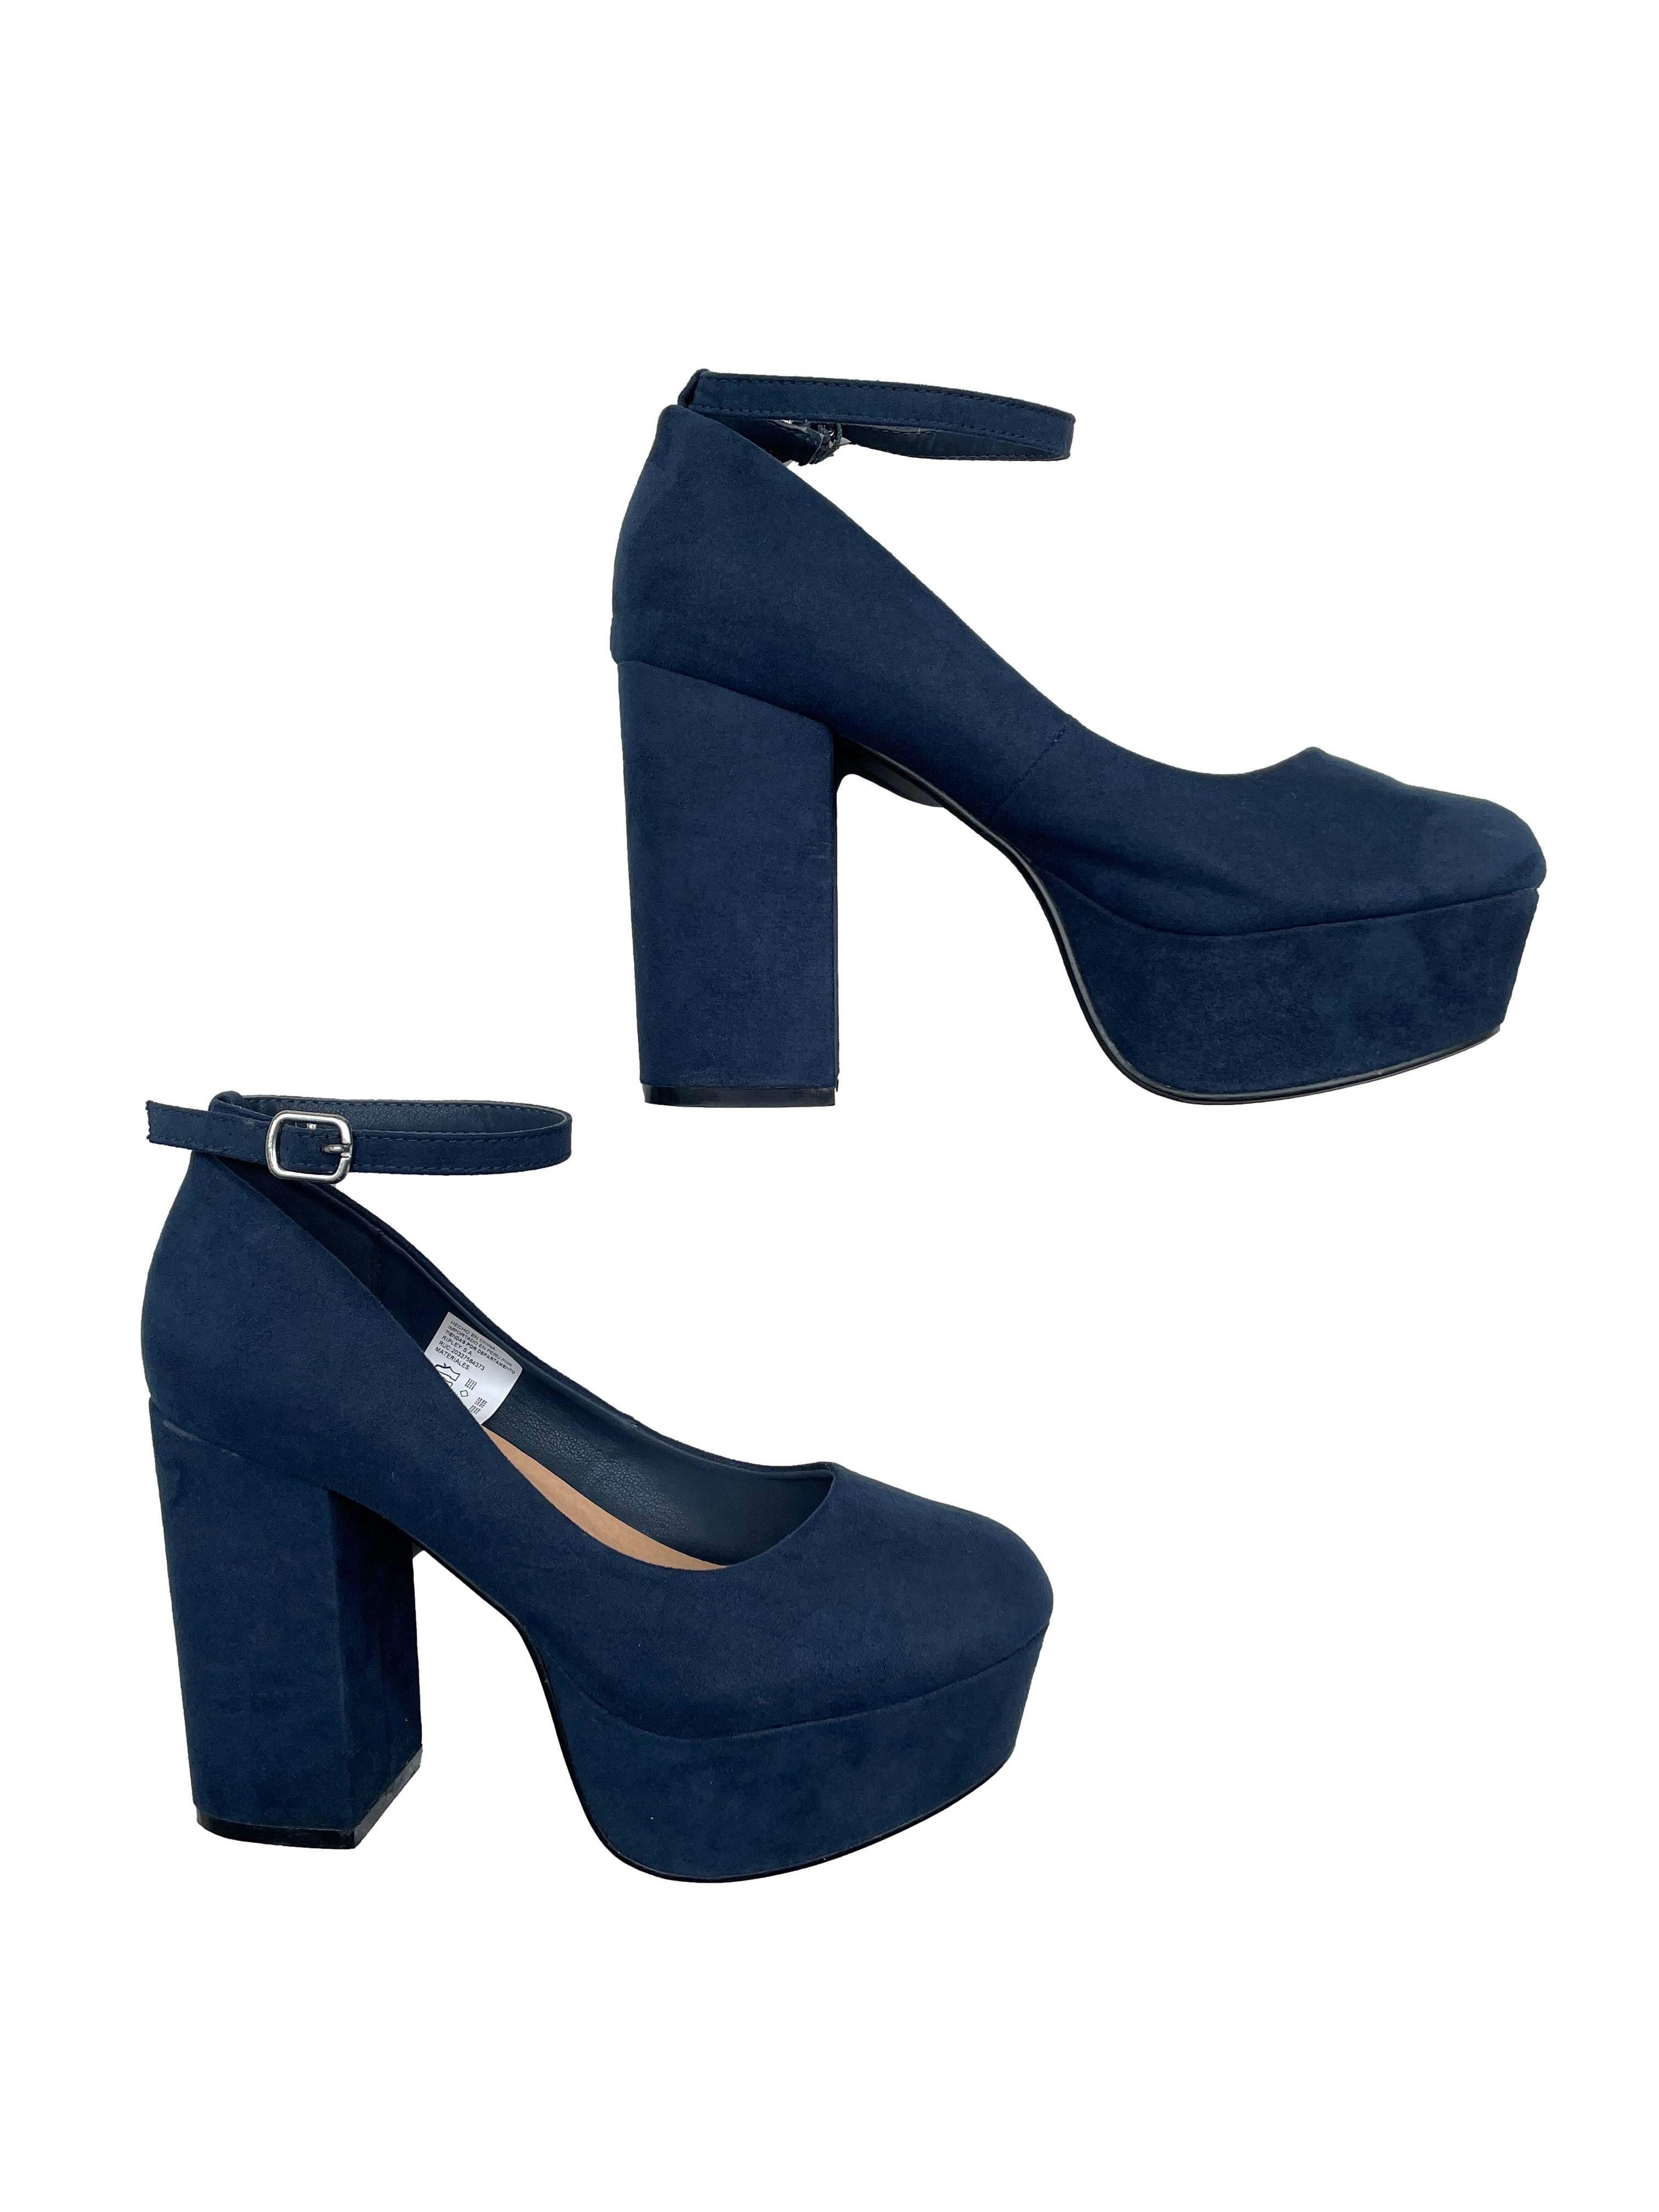 Zapatos Index azul marino tipo gamuza, modelo con correa en tobillo, taco  11cm, plataforma 4cm. Estado 9/10. | Las Traperas